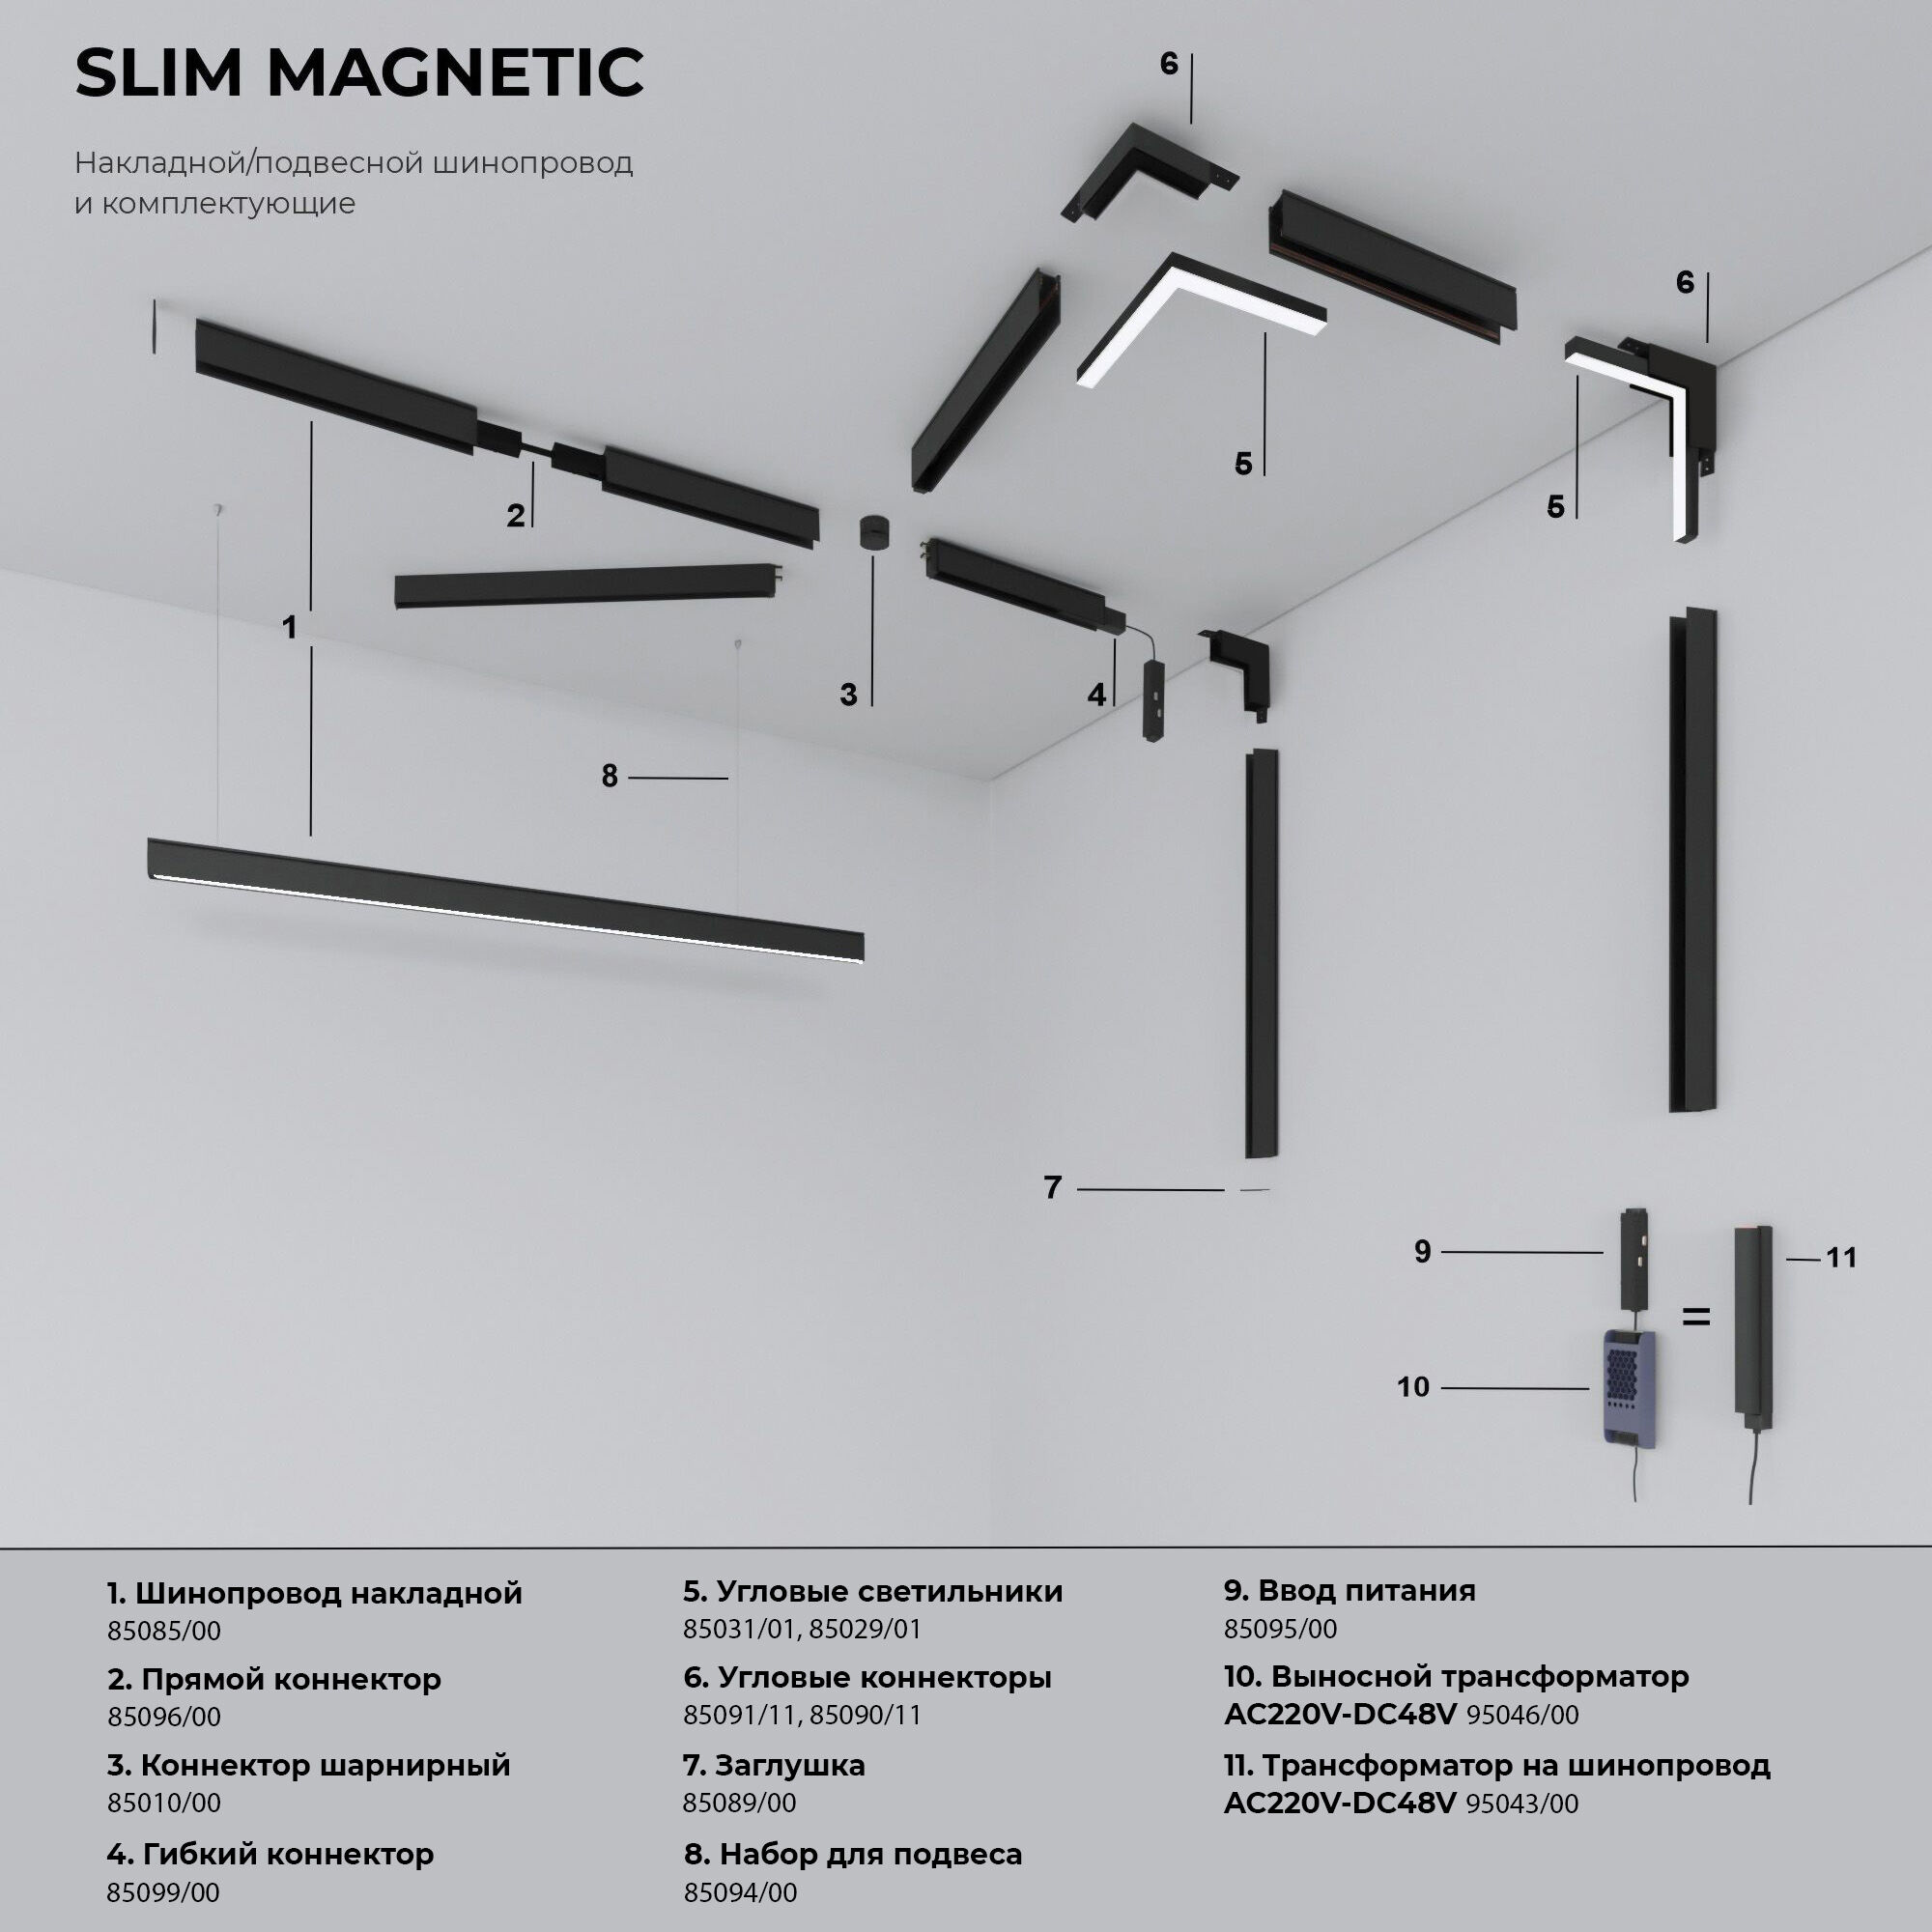 Slim Magnetic Шинопровод накладной белый 2м 85084/00